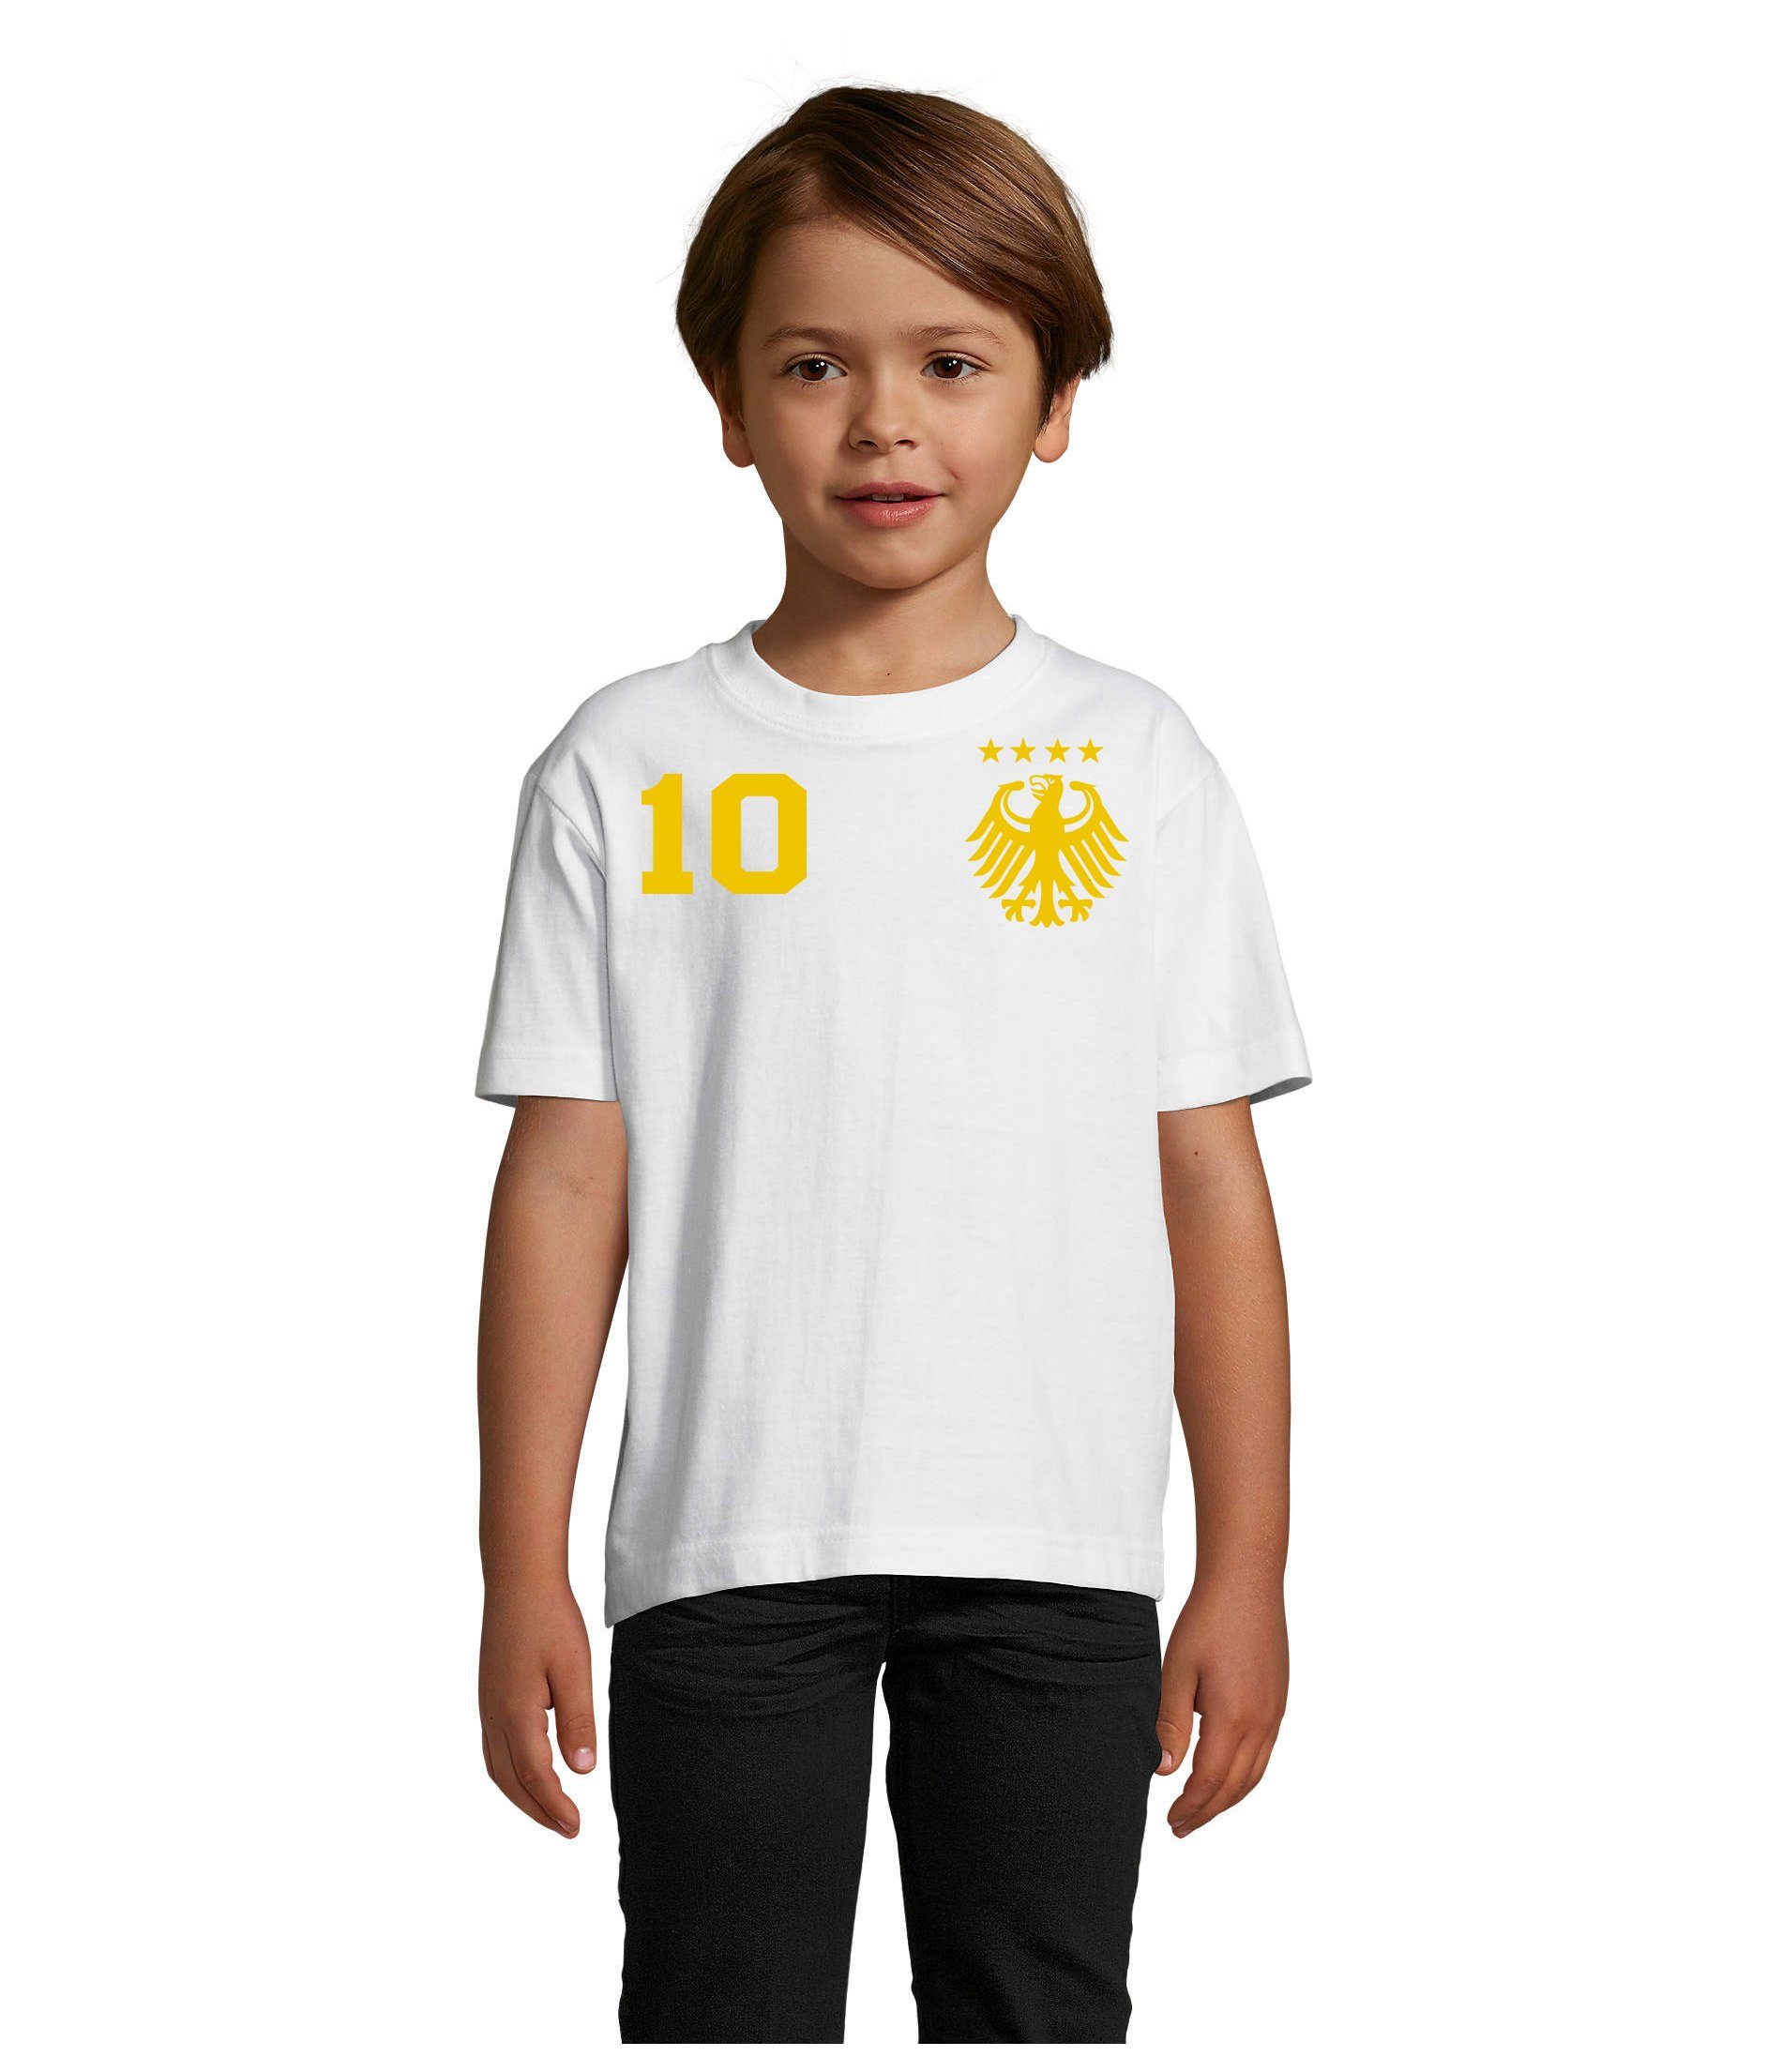 Blondie & Brownie T-Shirt Kinder Deutschland Germany Sport Trikot Fußball Meister EM Gold/Weiss